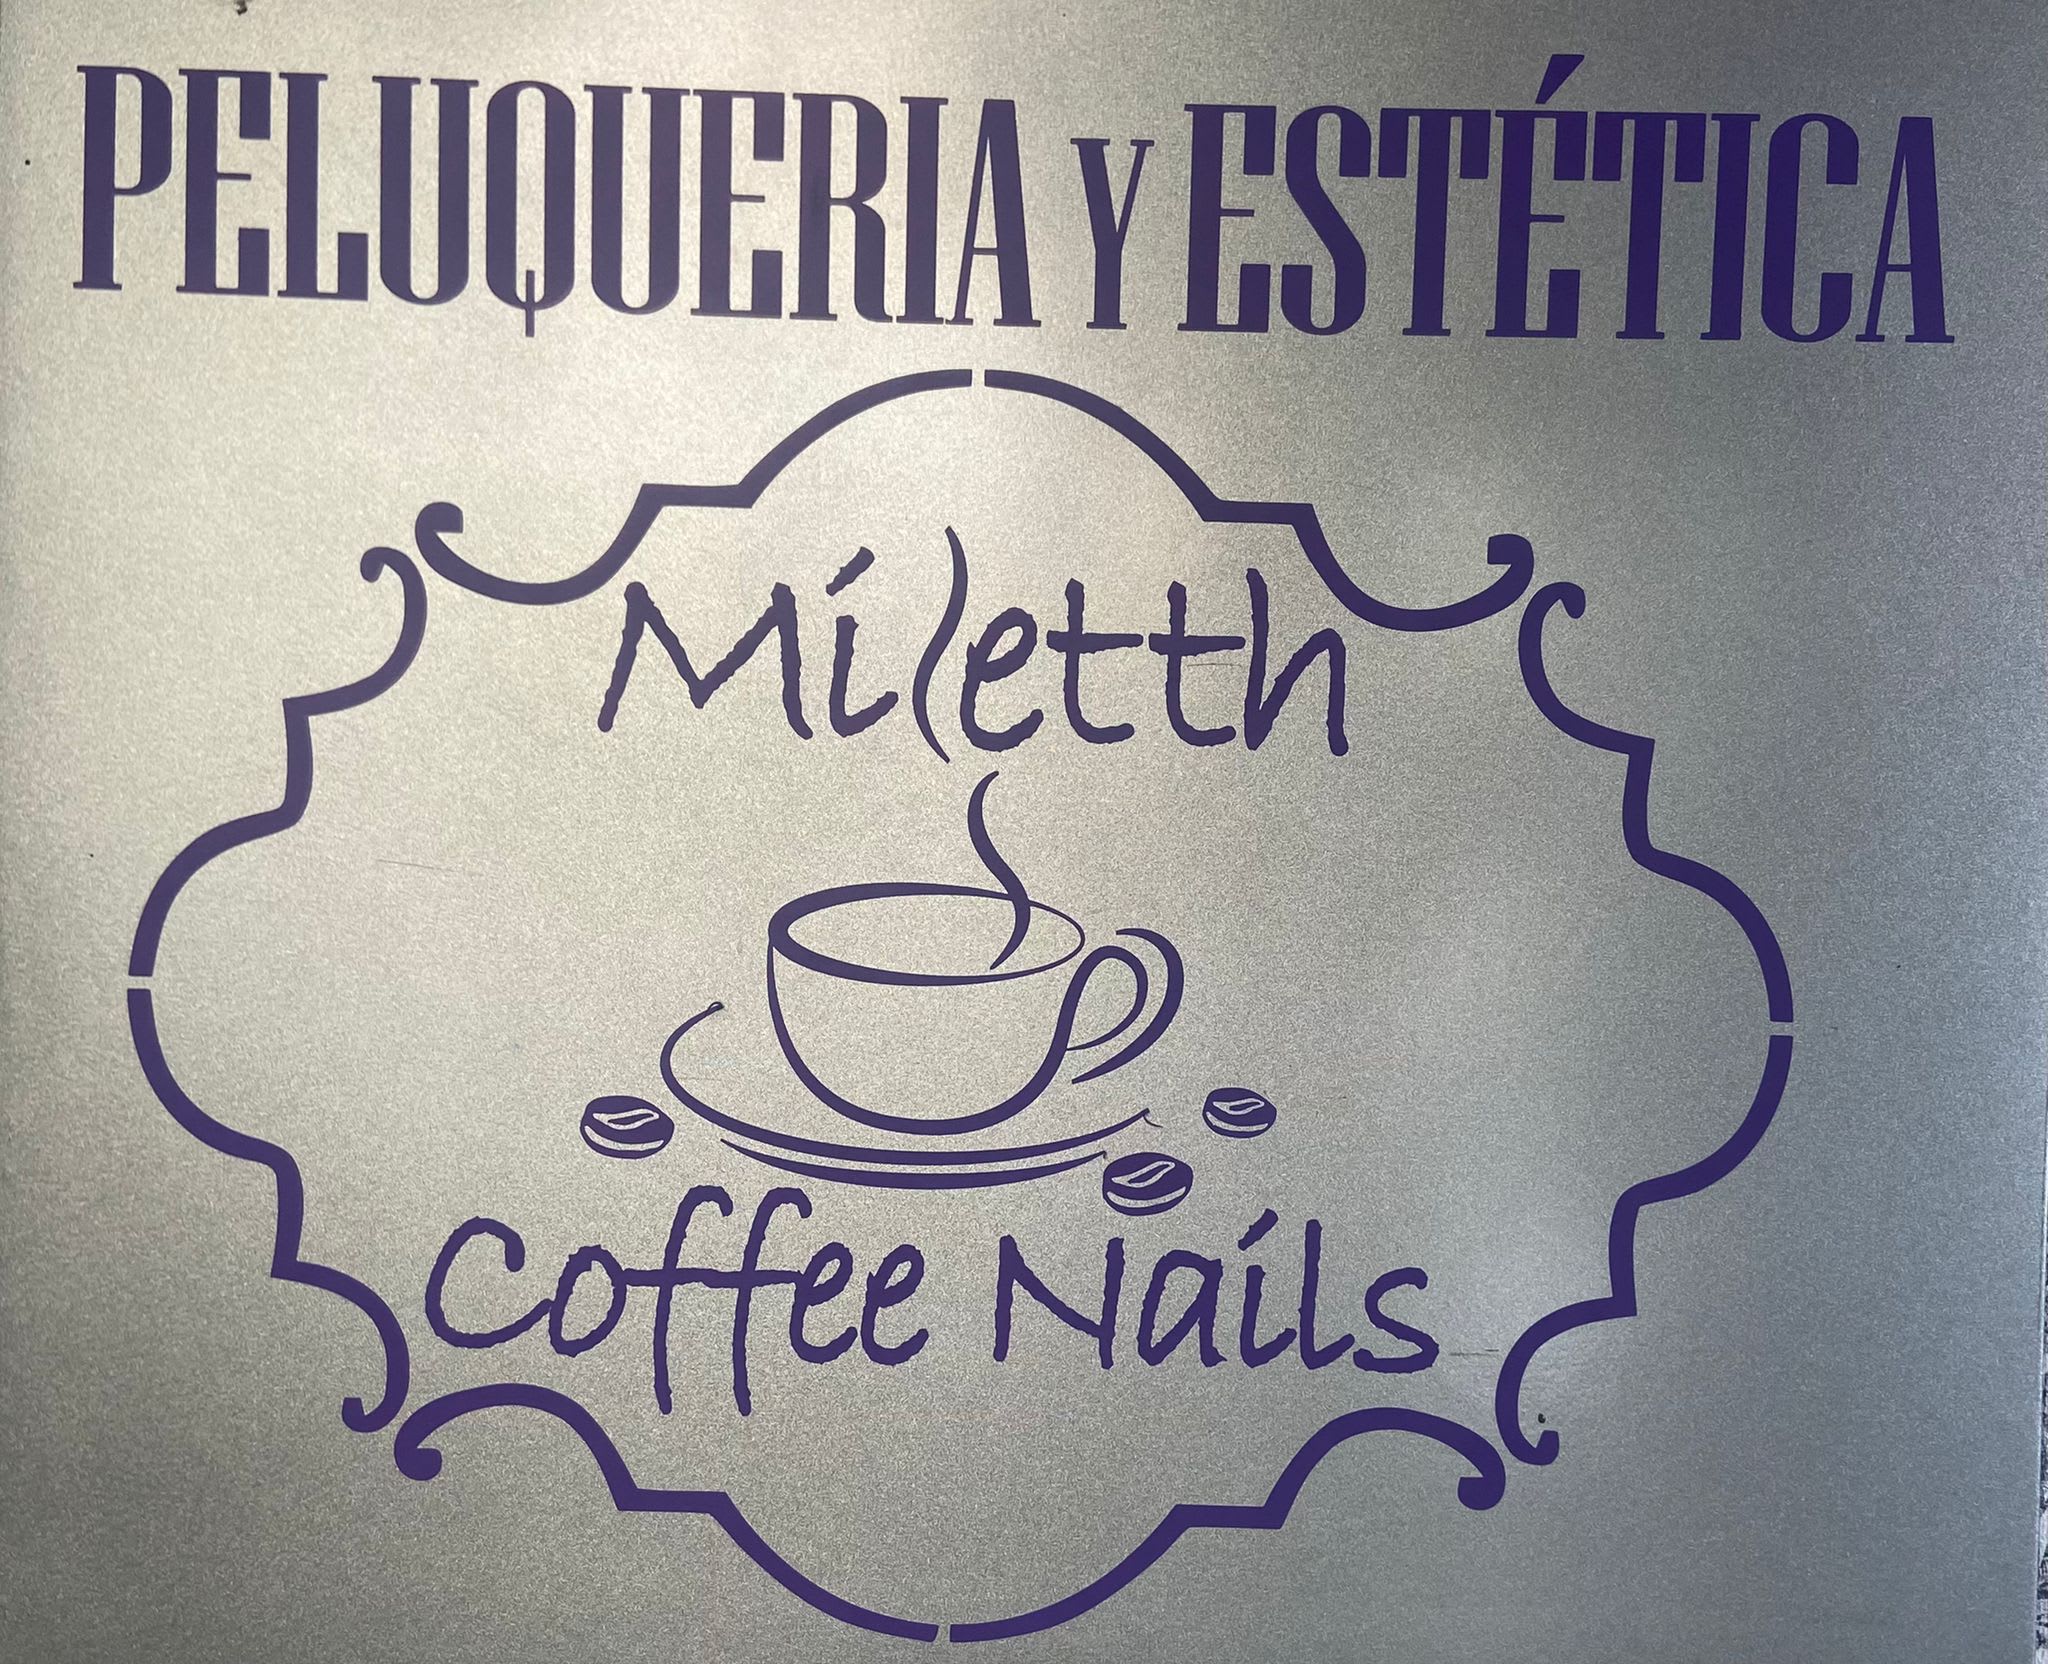 Peluquería y Estética Miletth Coffee Nails